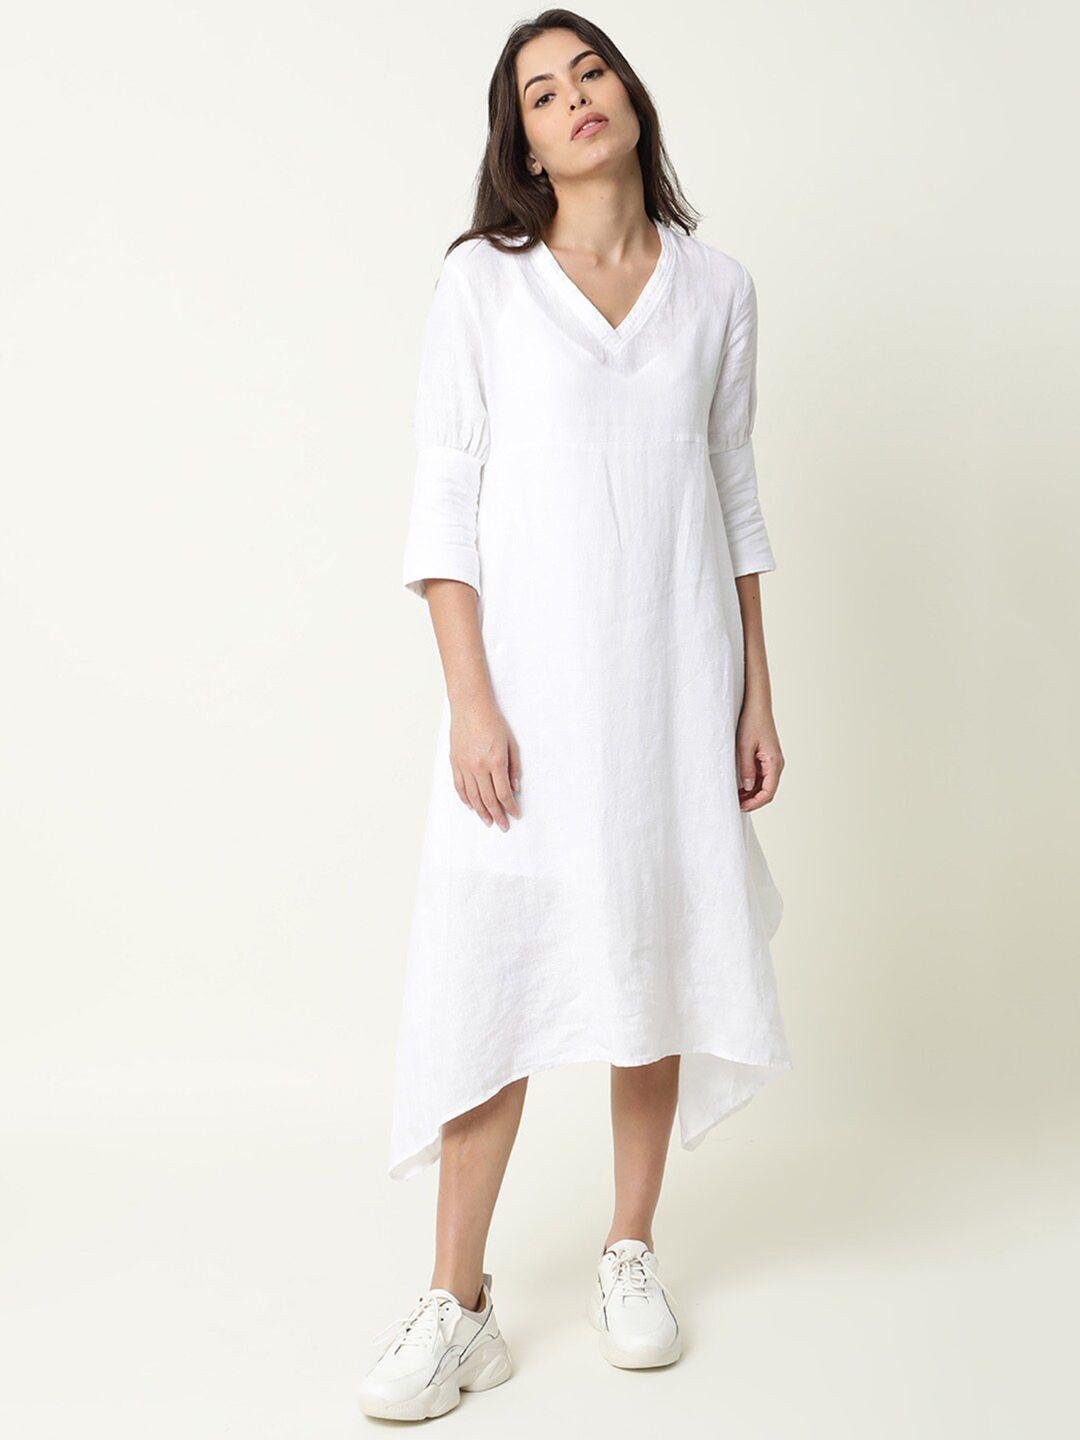 rareism white linen a-line dress